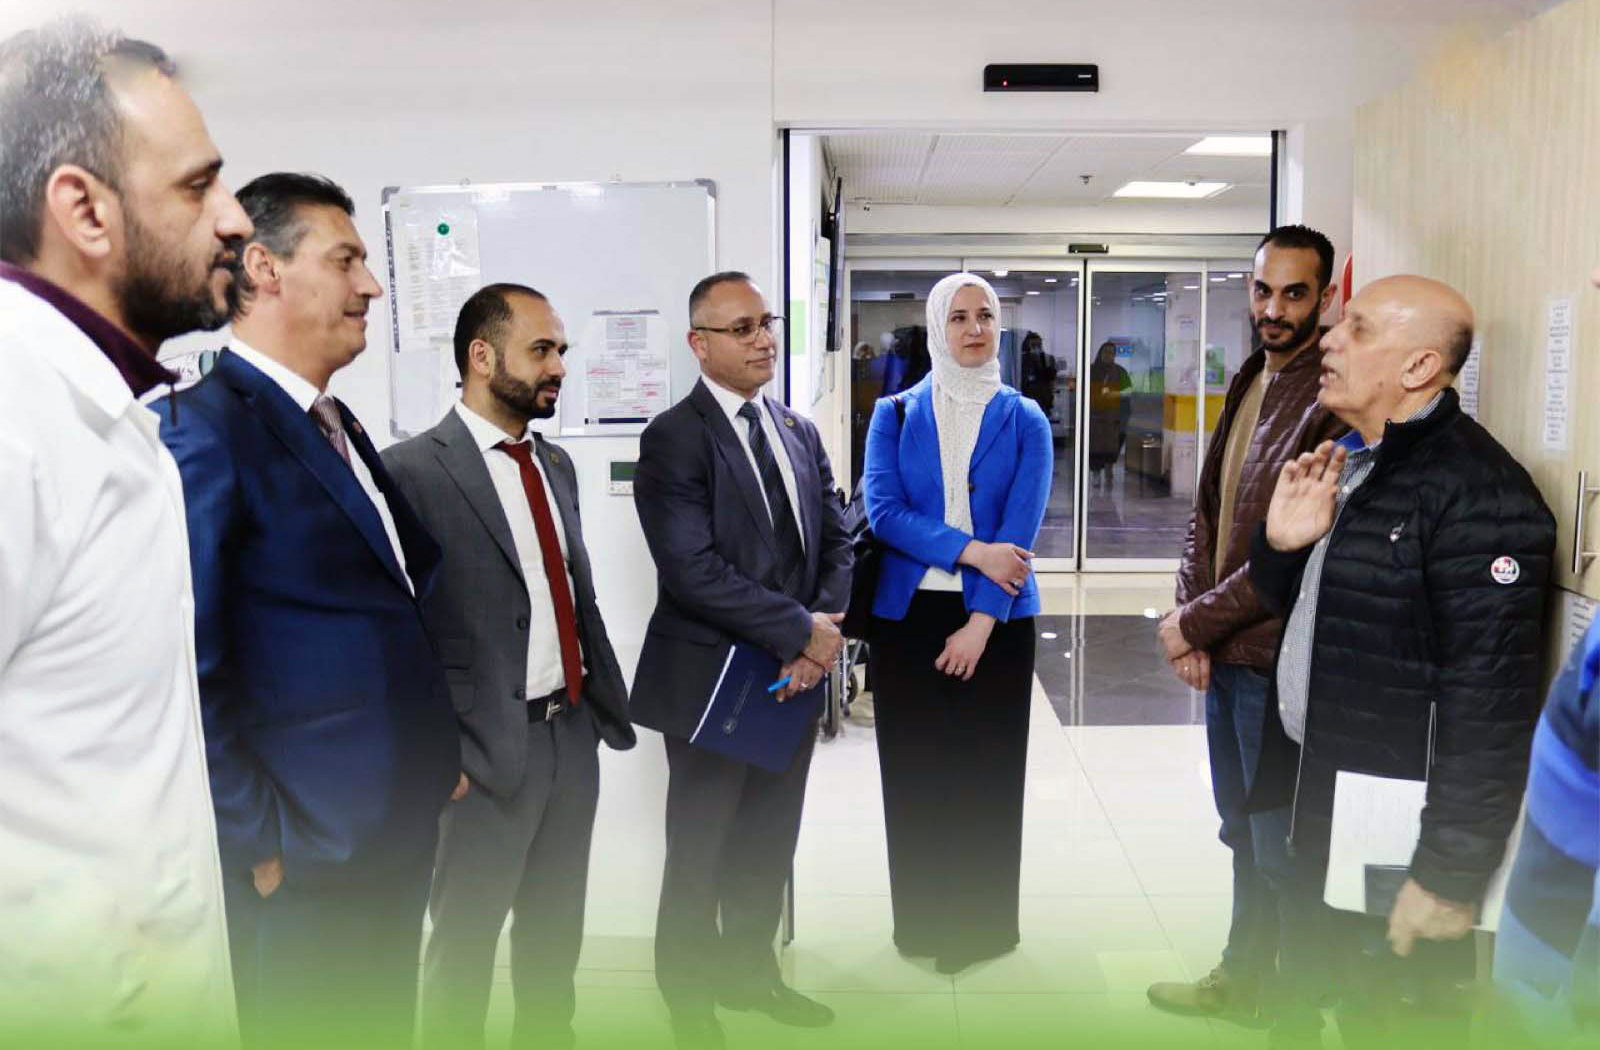 الجامعة العربية الأمريكية في زيارة لمستشفى اتش كلينيك التخصصي في رام الله لتعزيز التعاون والشراكة